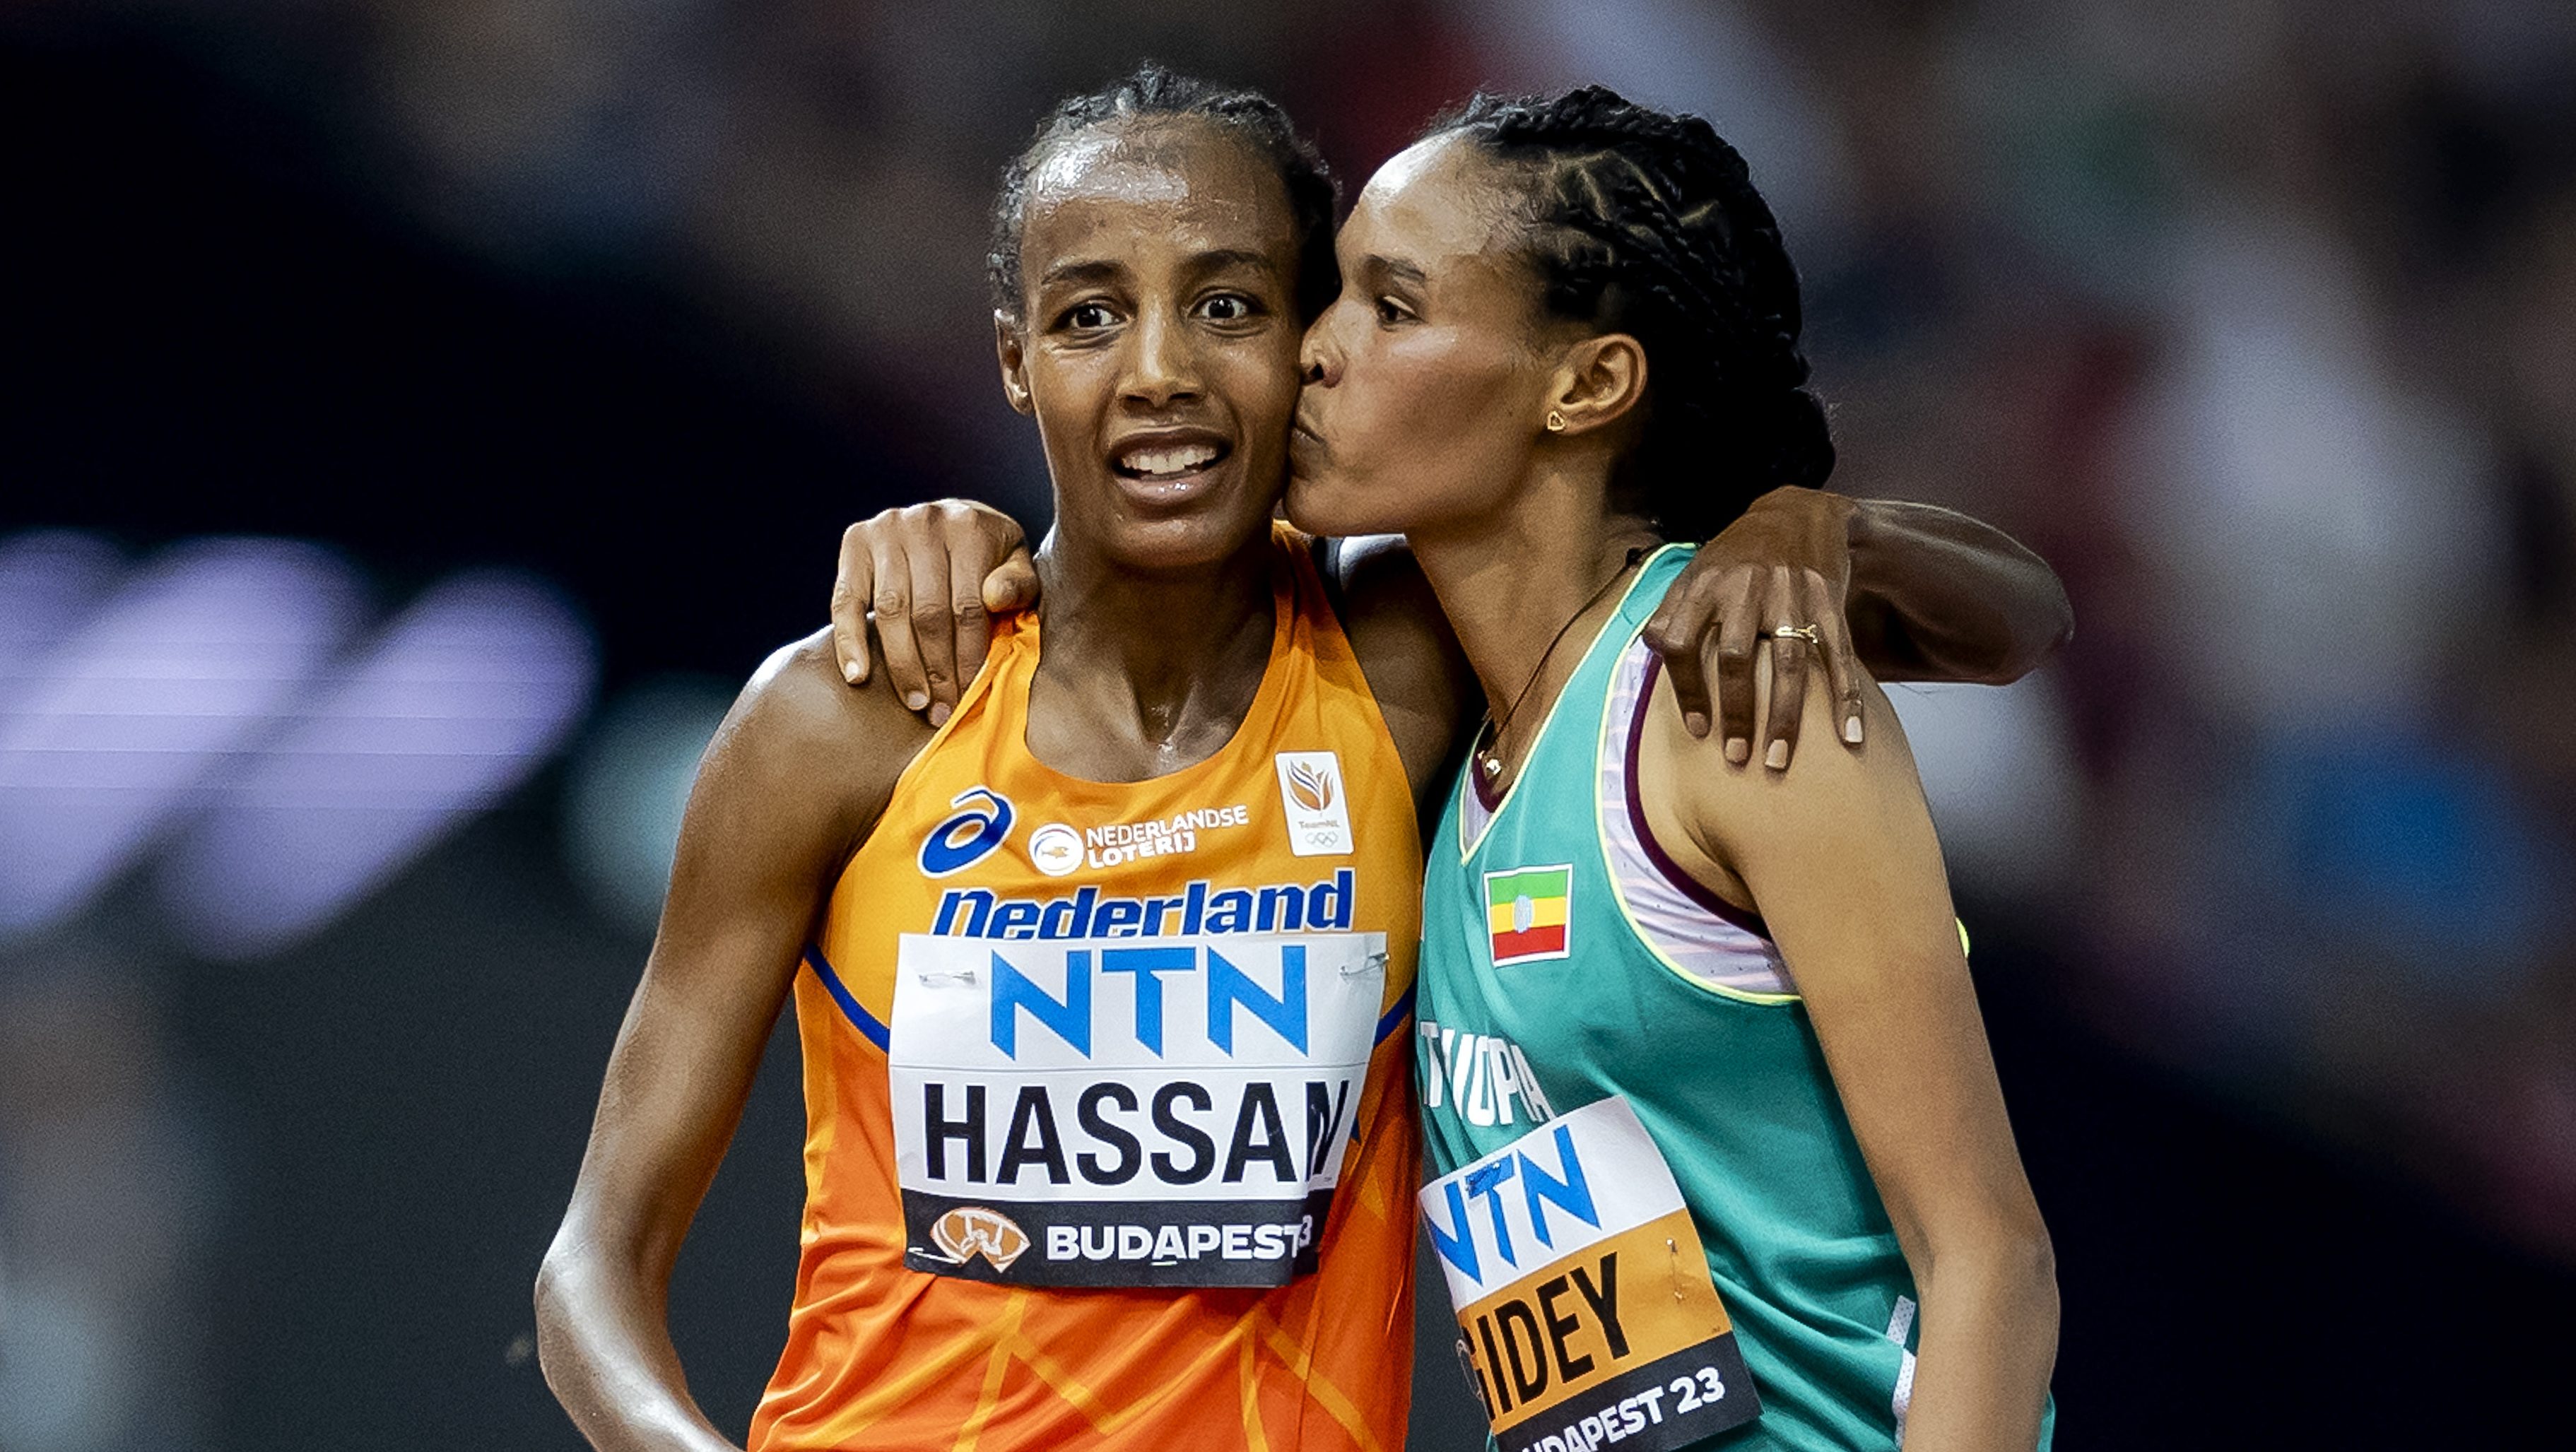 Ethiopian sweep in the women's 10,000m 🤯